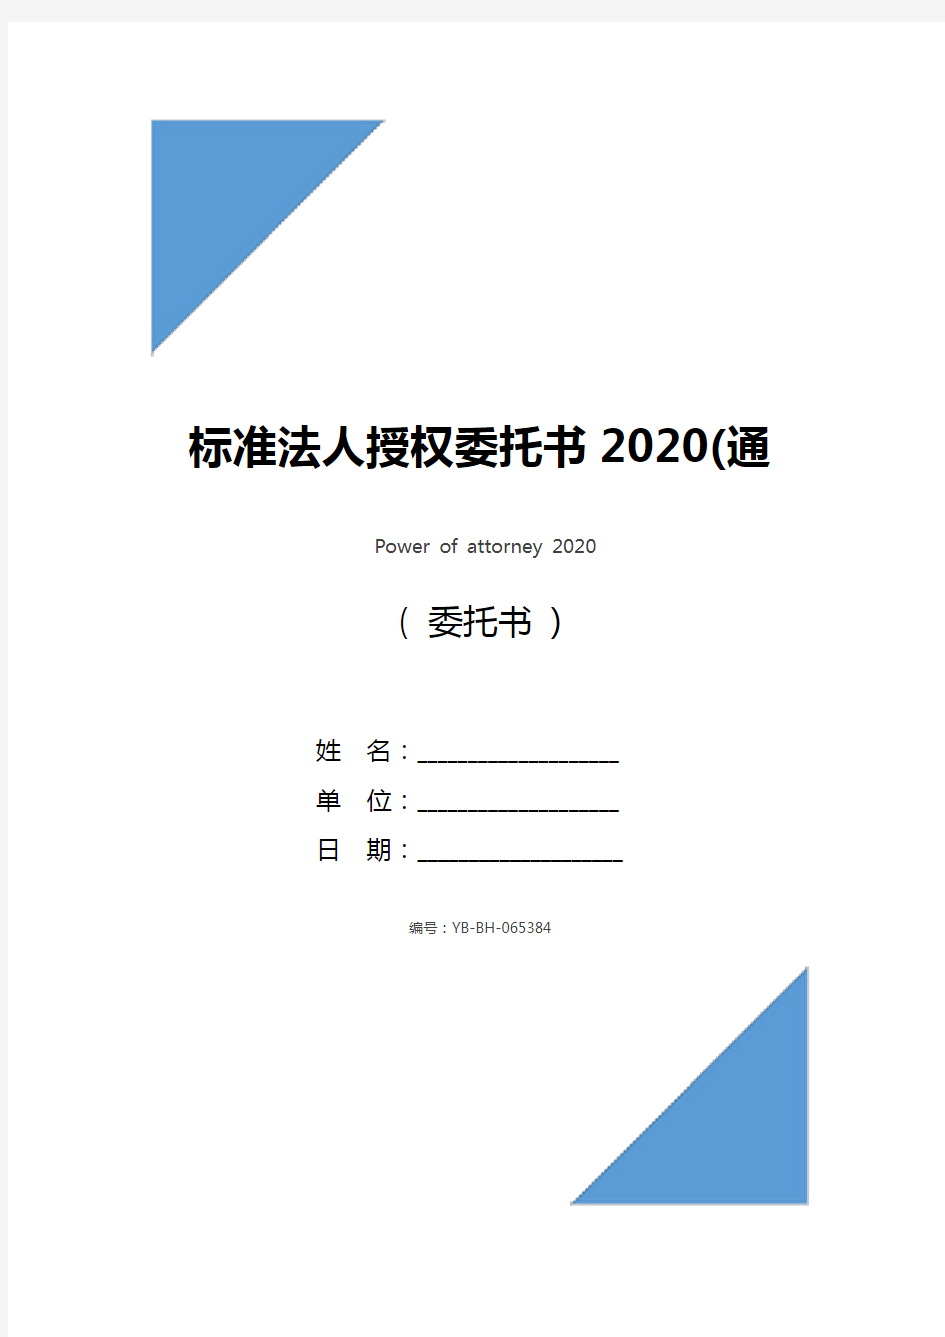 标准法人授权委托书2020(通用版)